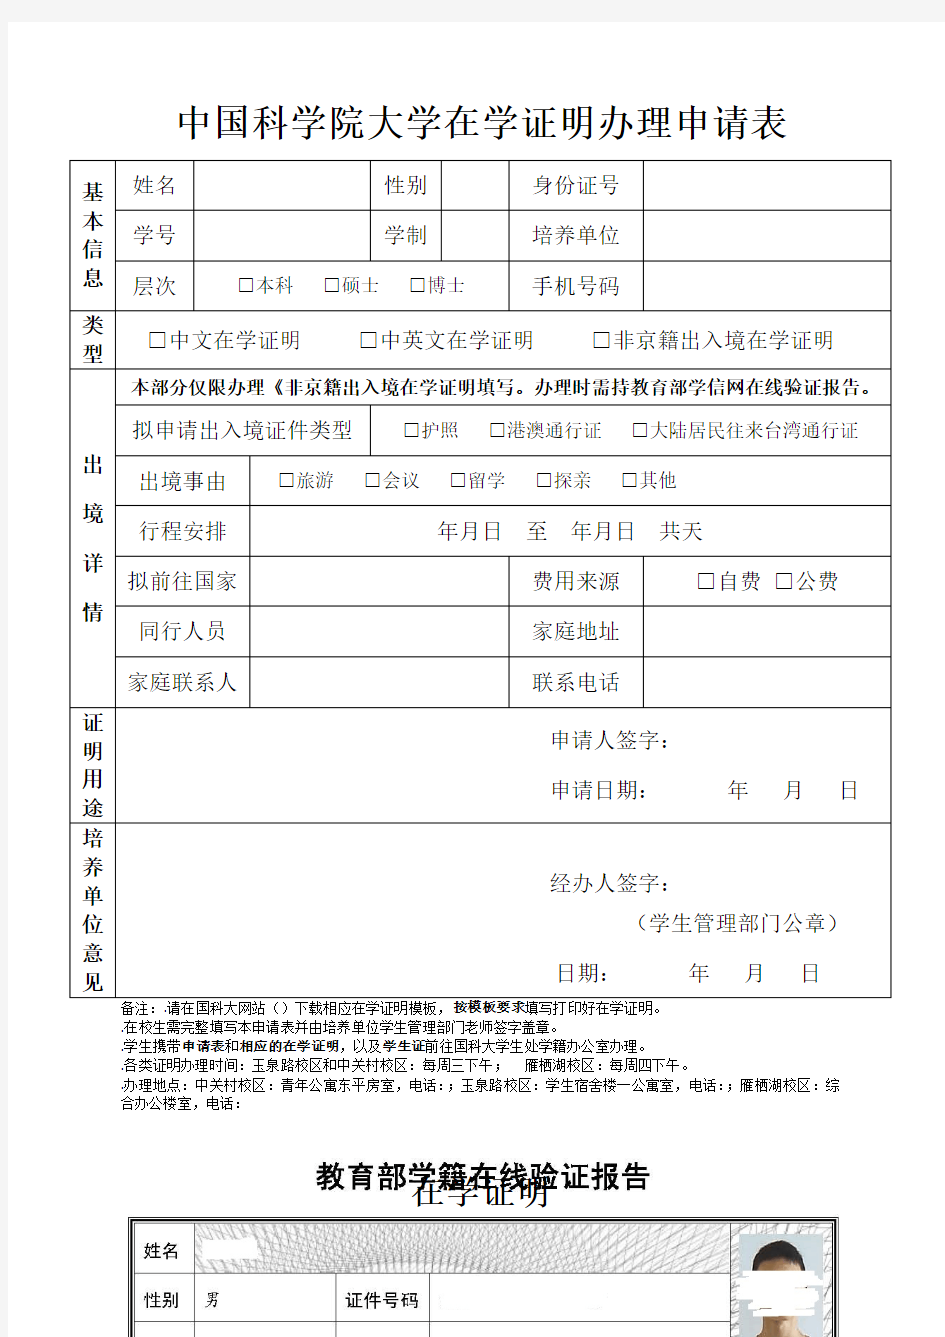 中国科学院大学在学证明办理申请表